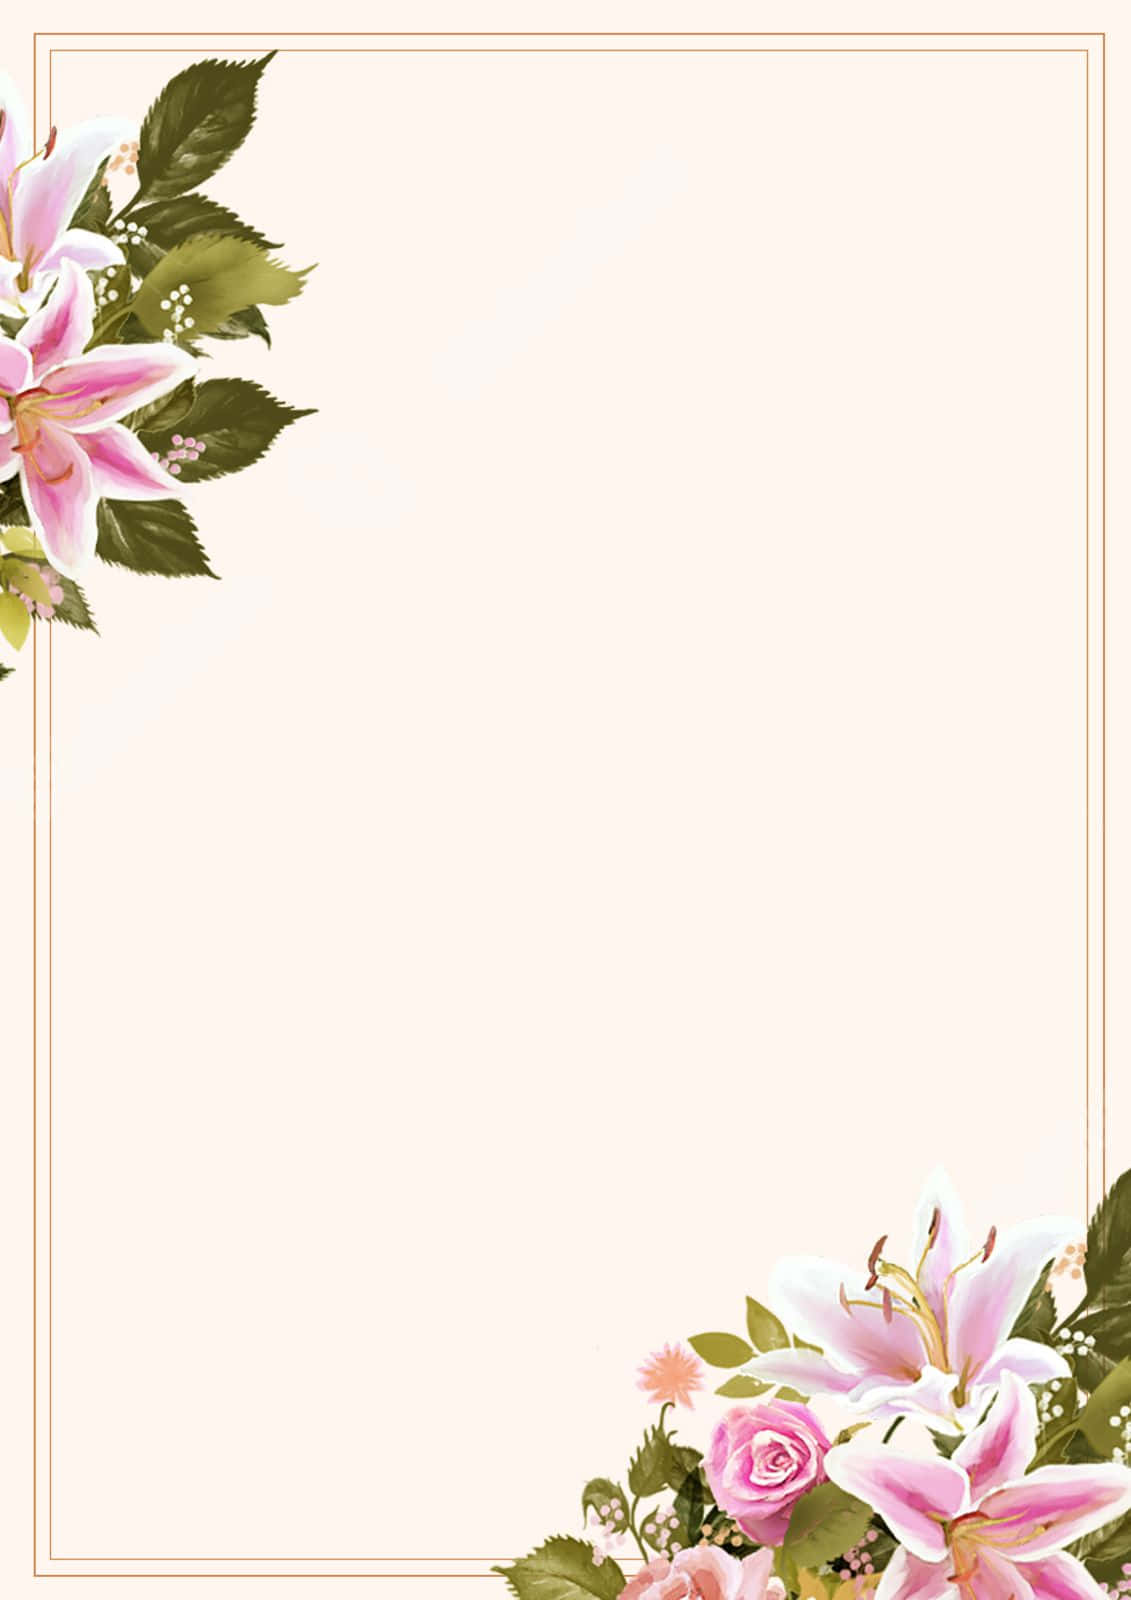 Floral Page Border Design Background